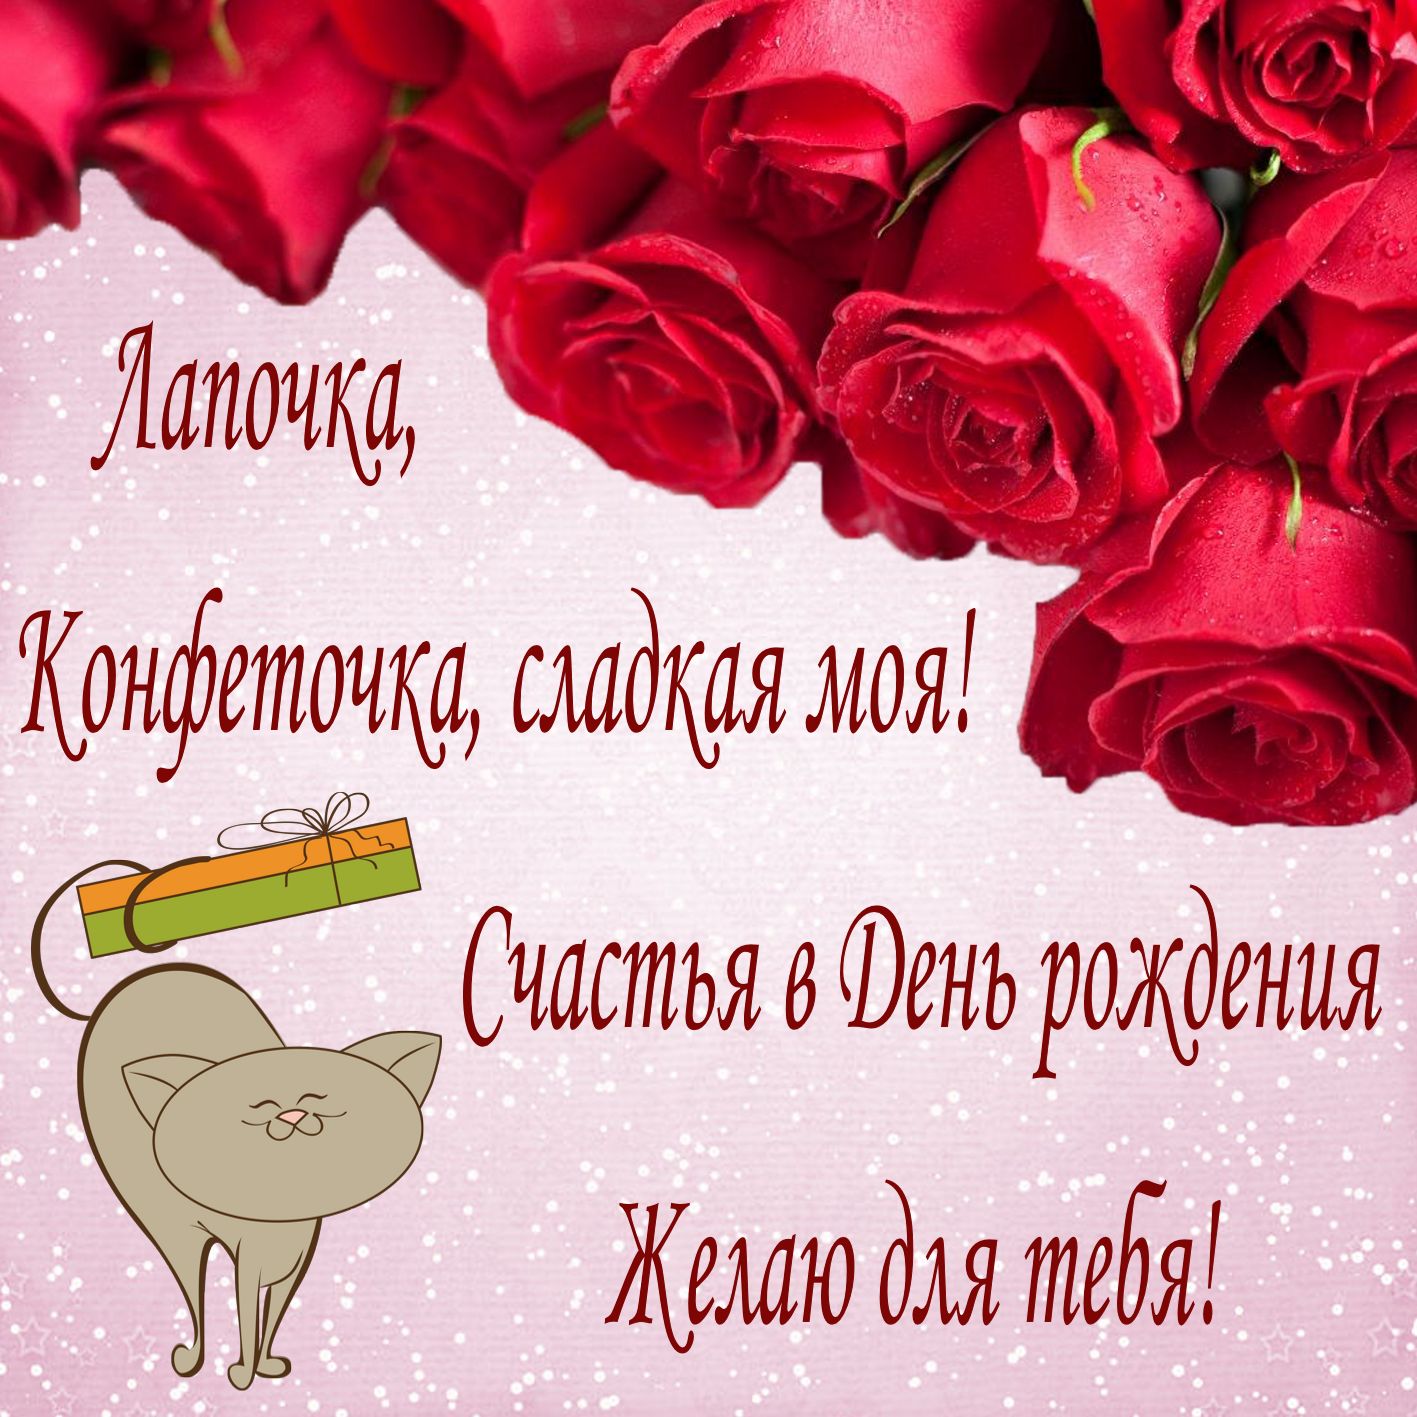 Красивые поздравления с днем рождения любимой девушке | pzdb.ru - поздравления на все случаи жизни